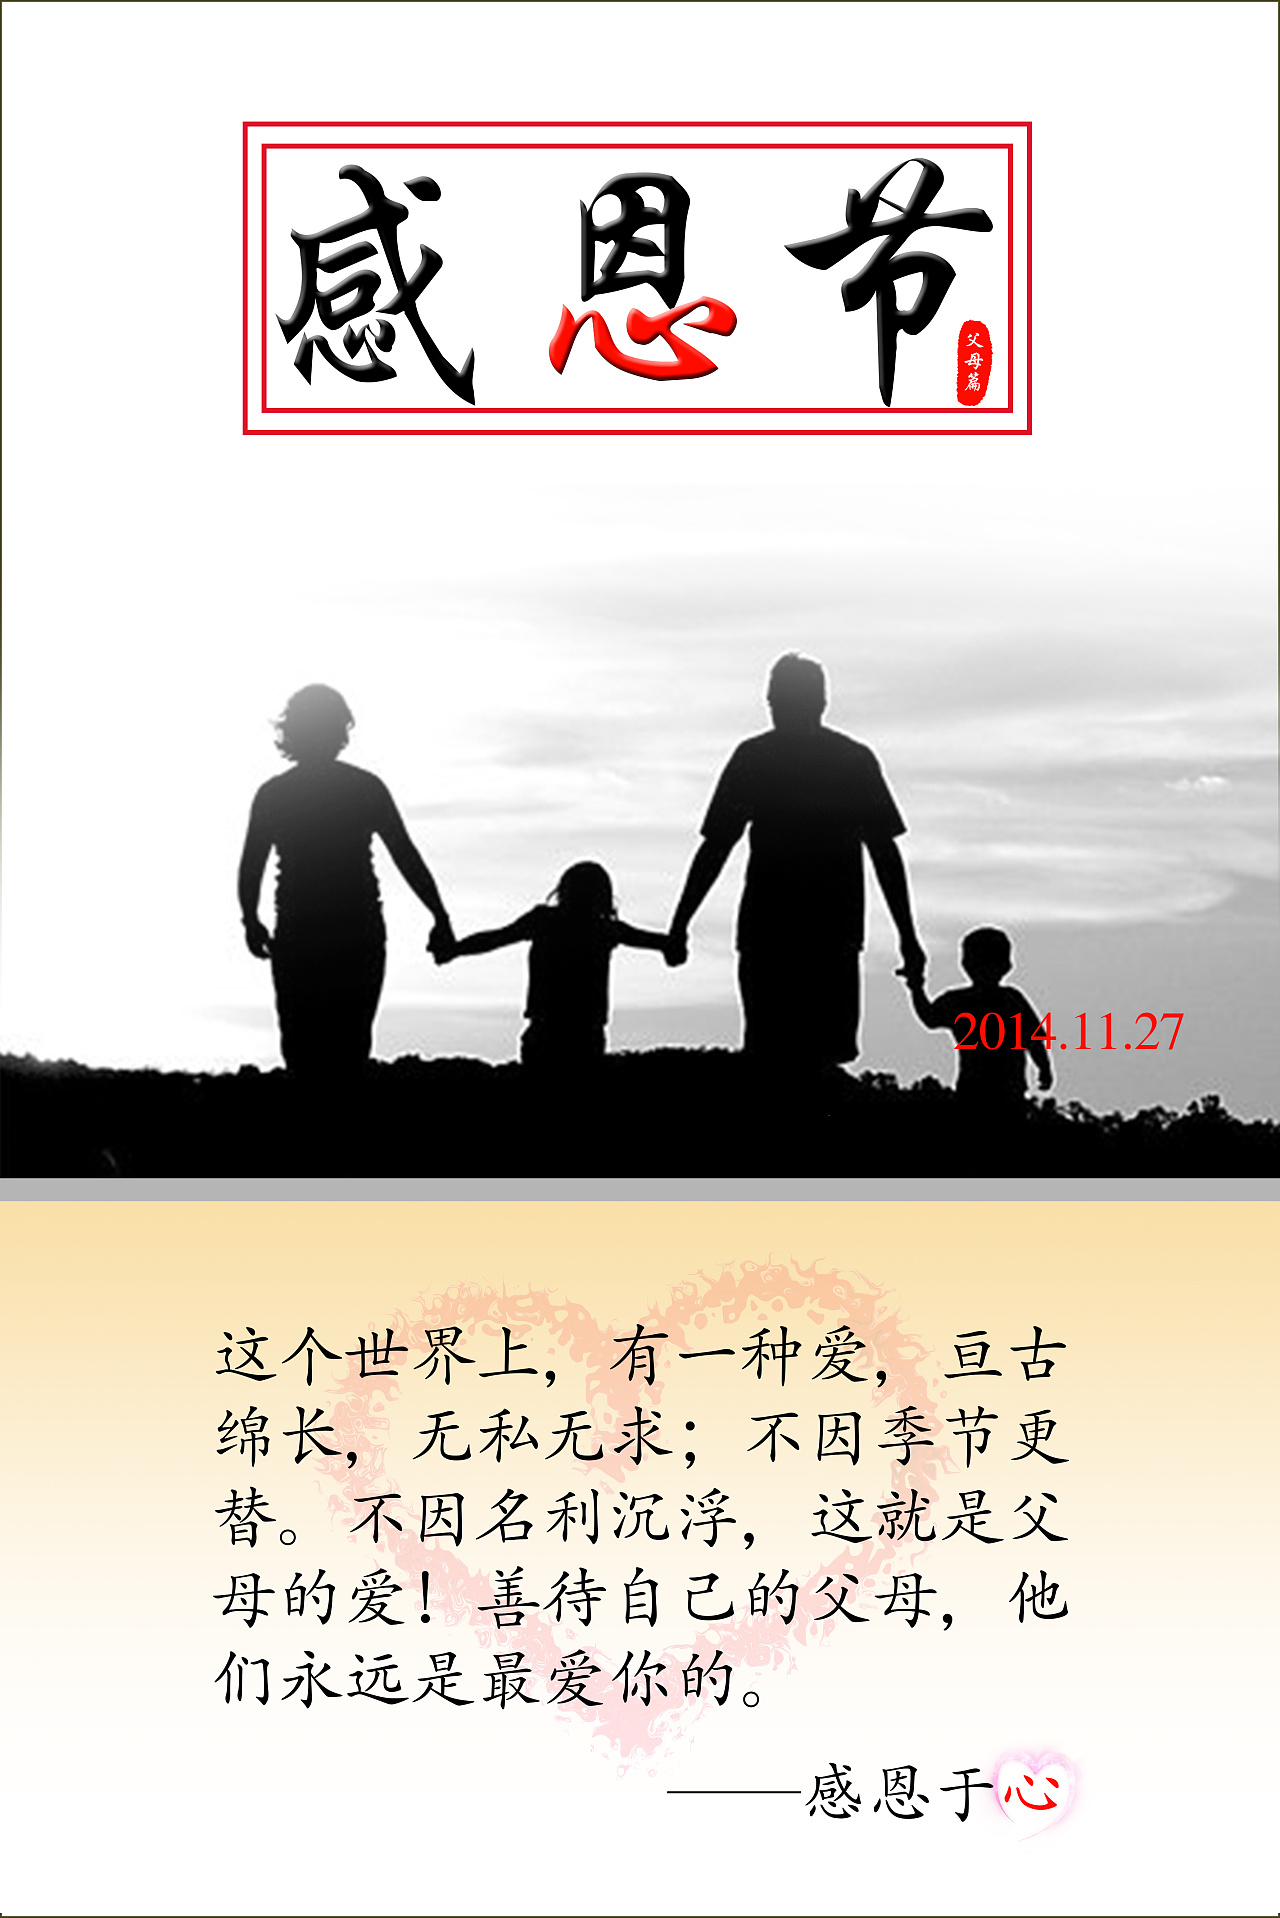 感恩节公益海报-父母篇